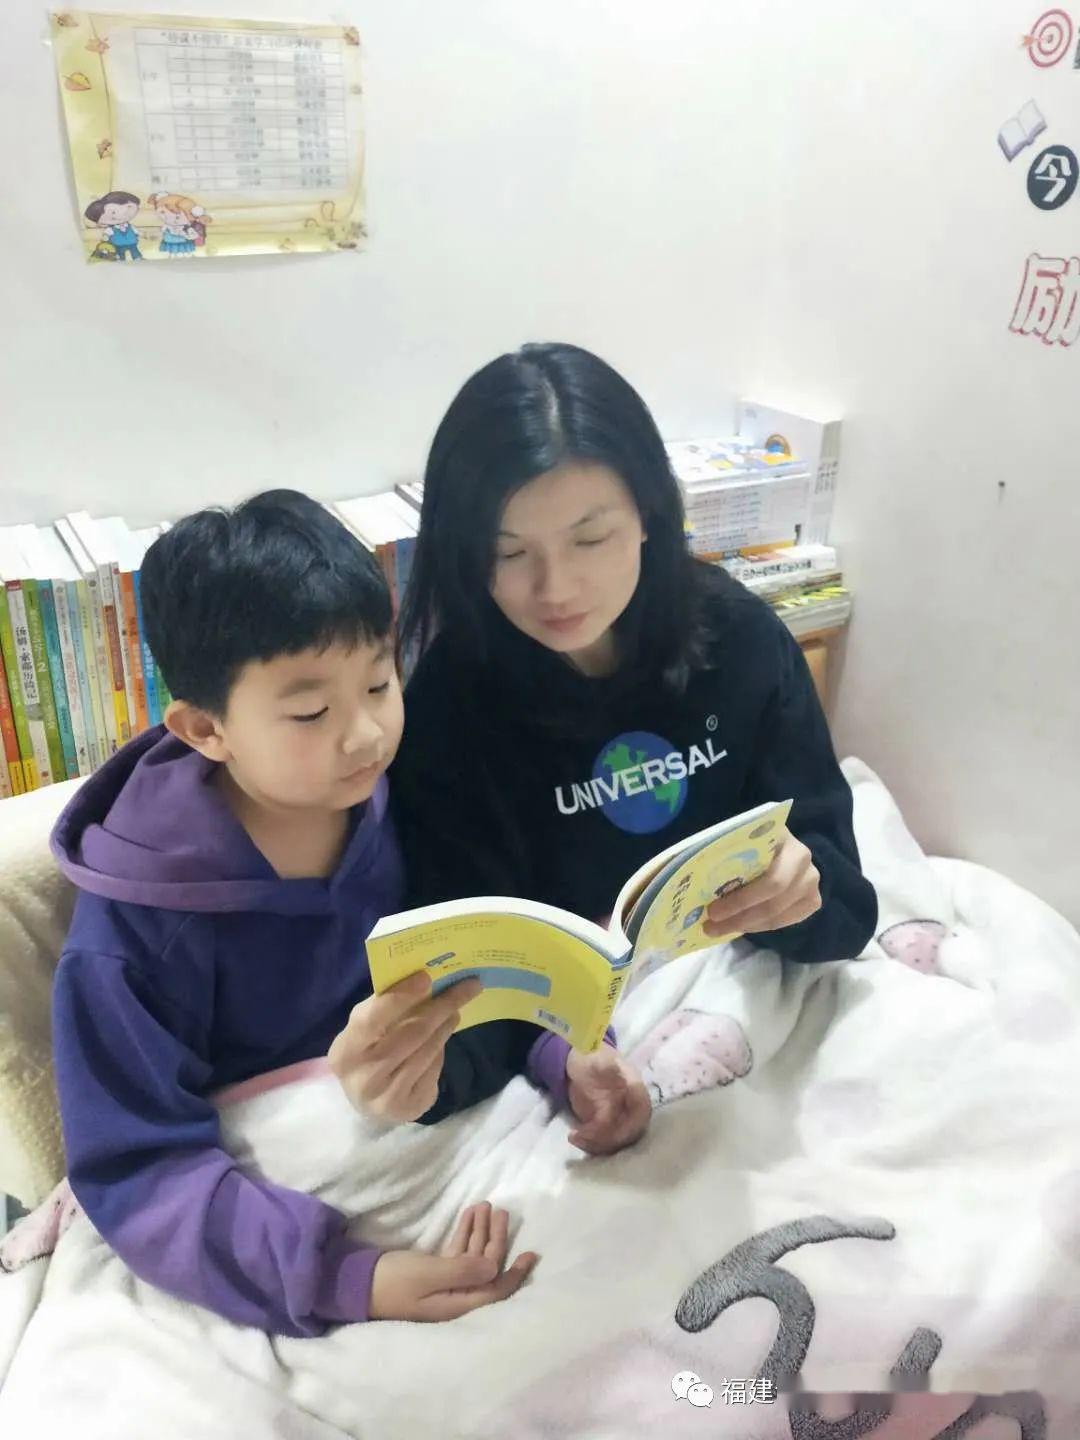 与家长的读书热情,在亲子共读过程中,父母和孩子共同分享阅读的收获